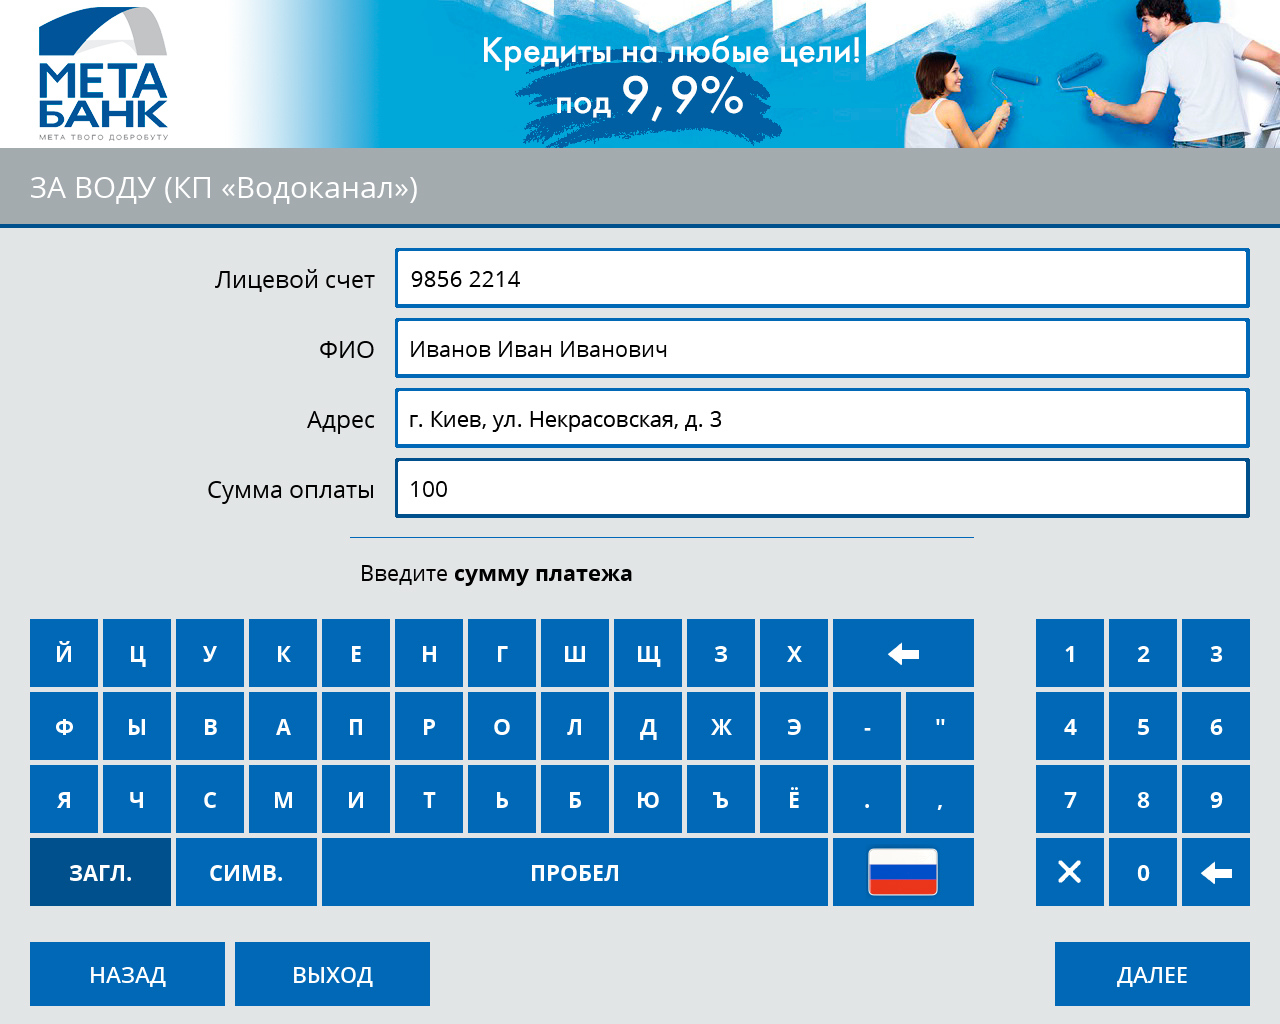 МетаБанк (Украина) автоматизирует прием платежей через сеть терминалов - рис.2